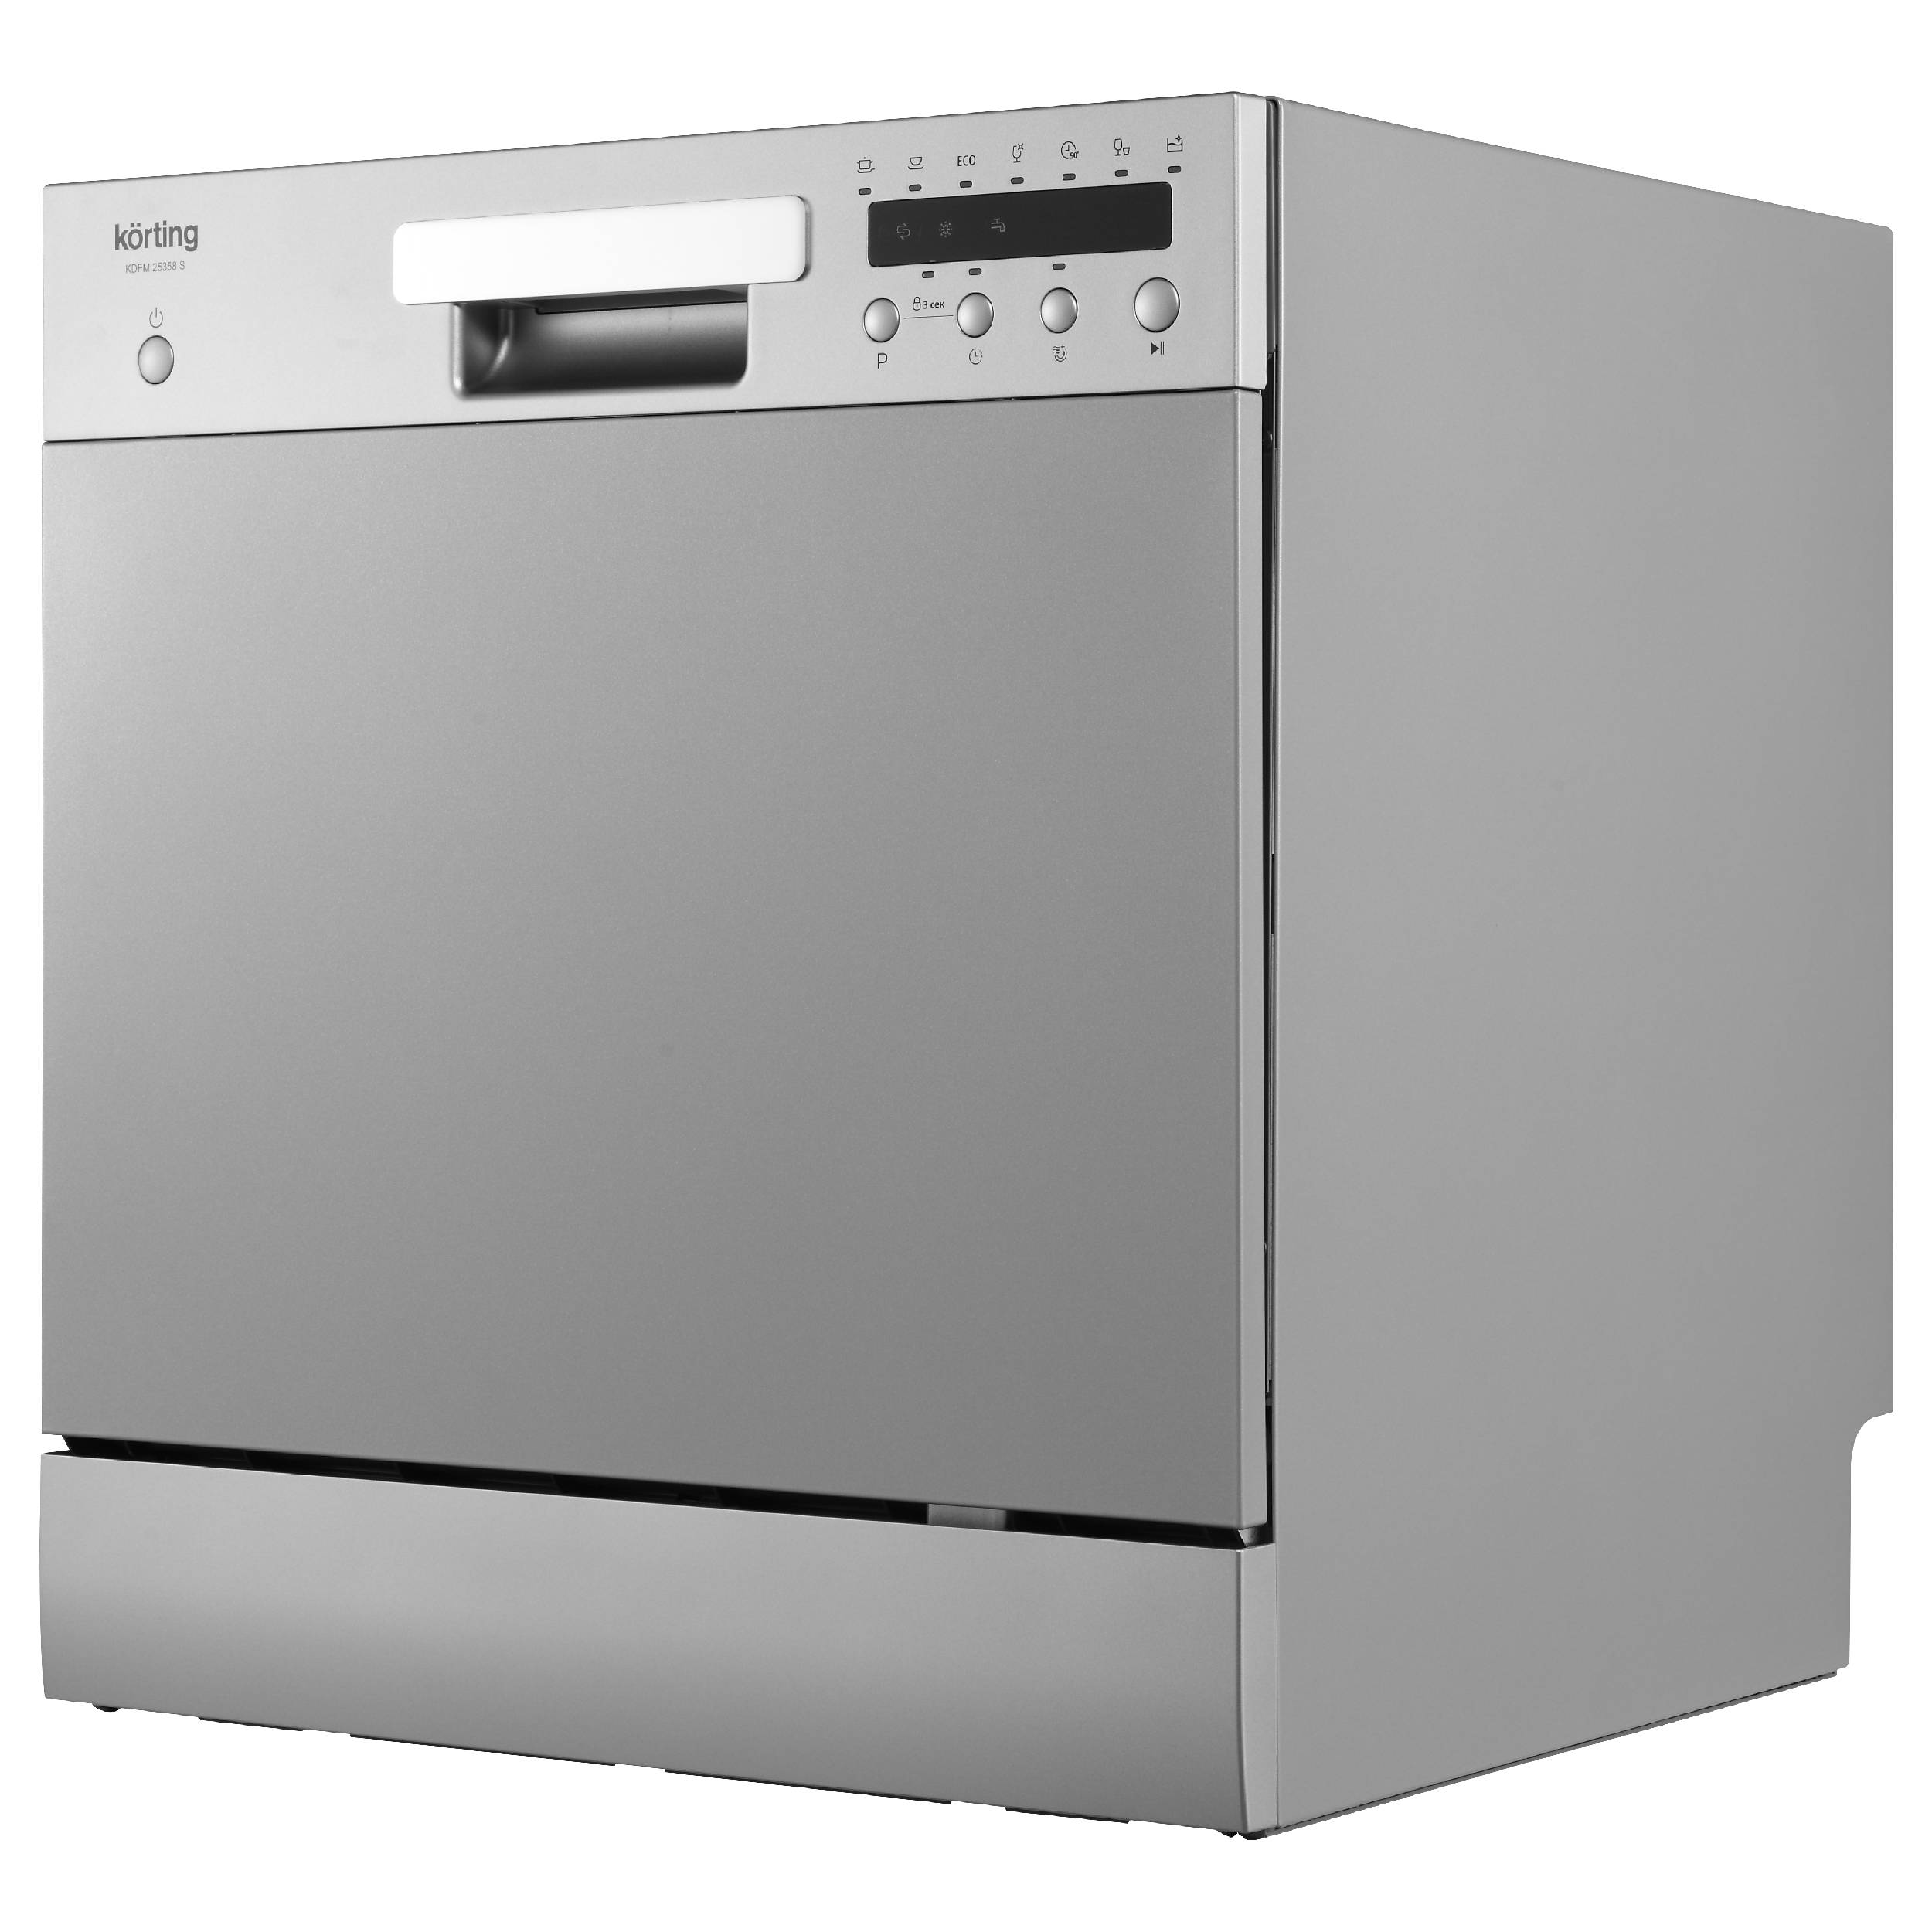 Посудомоечная машина KORTING KDFM 25358 S																		 — описание, фото, цены в интернет-магазине Премьер Техно